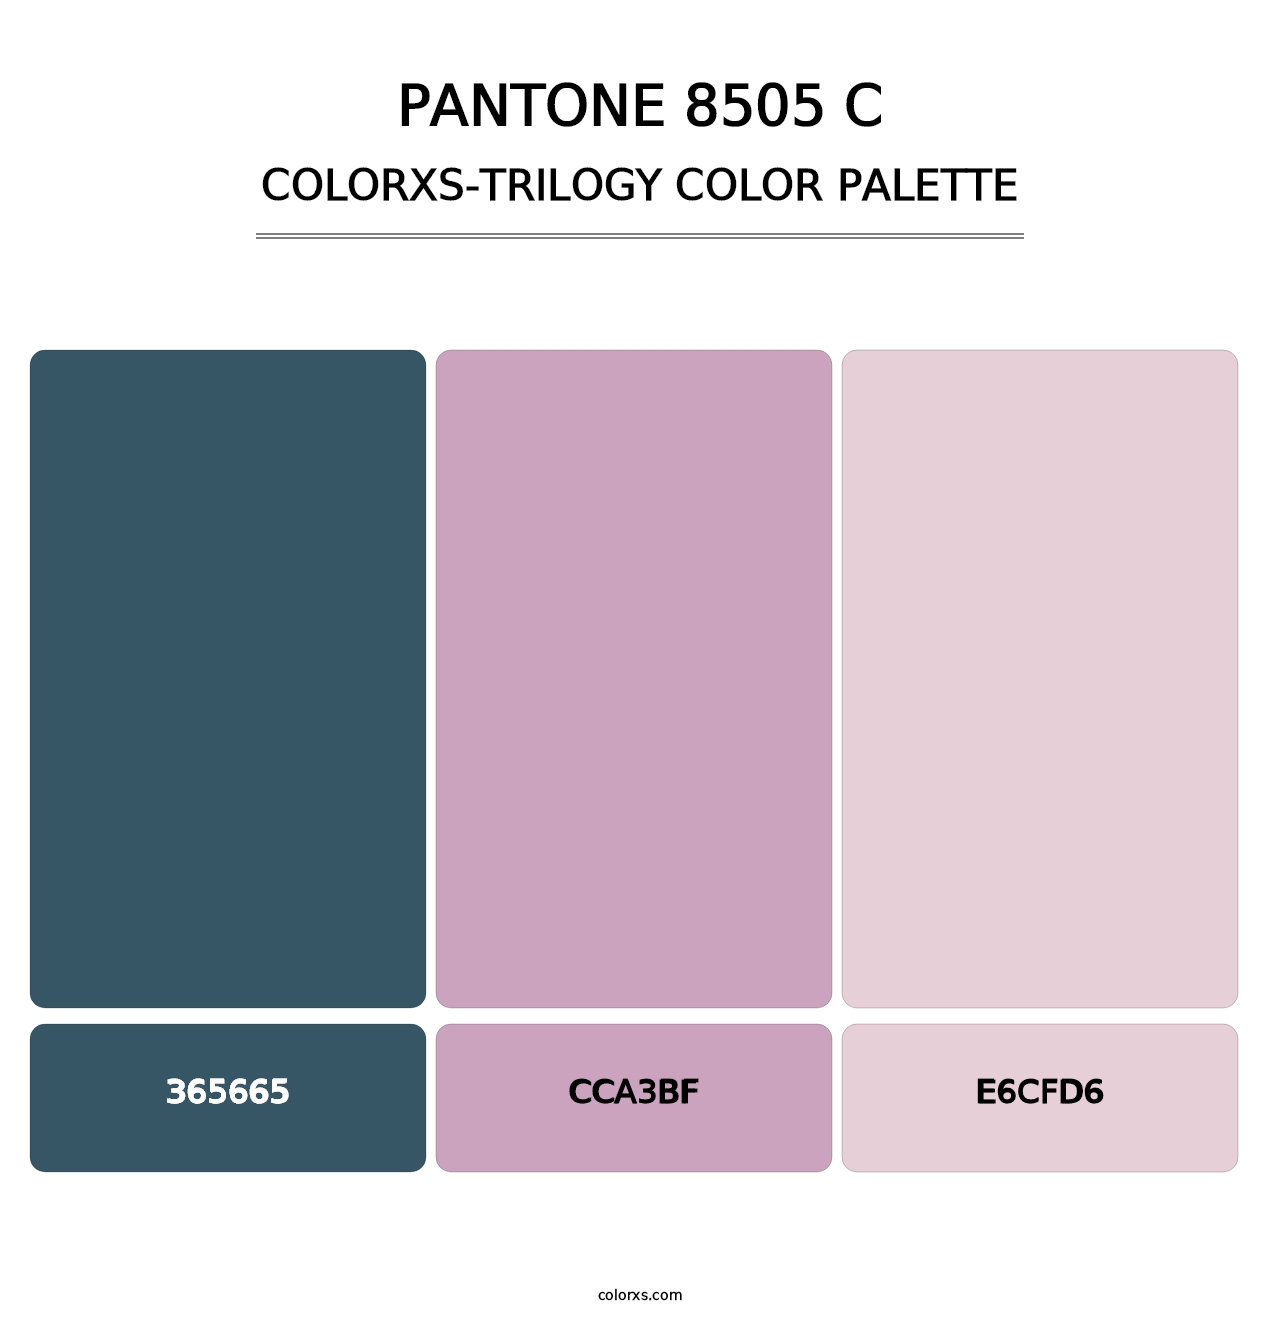 PANTONE 8505 C - Colorxs Trilogy Palette